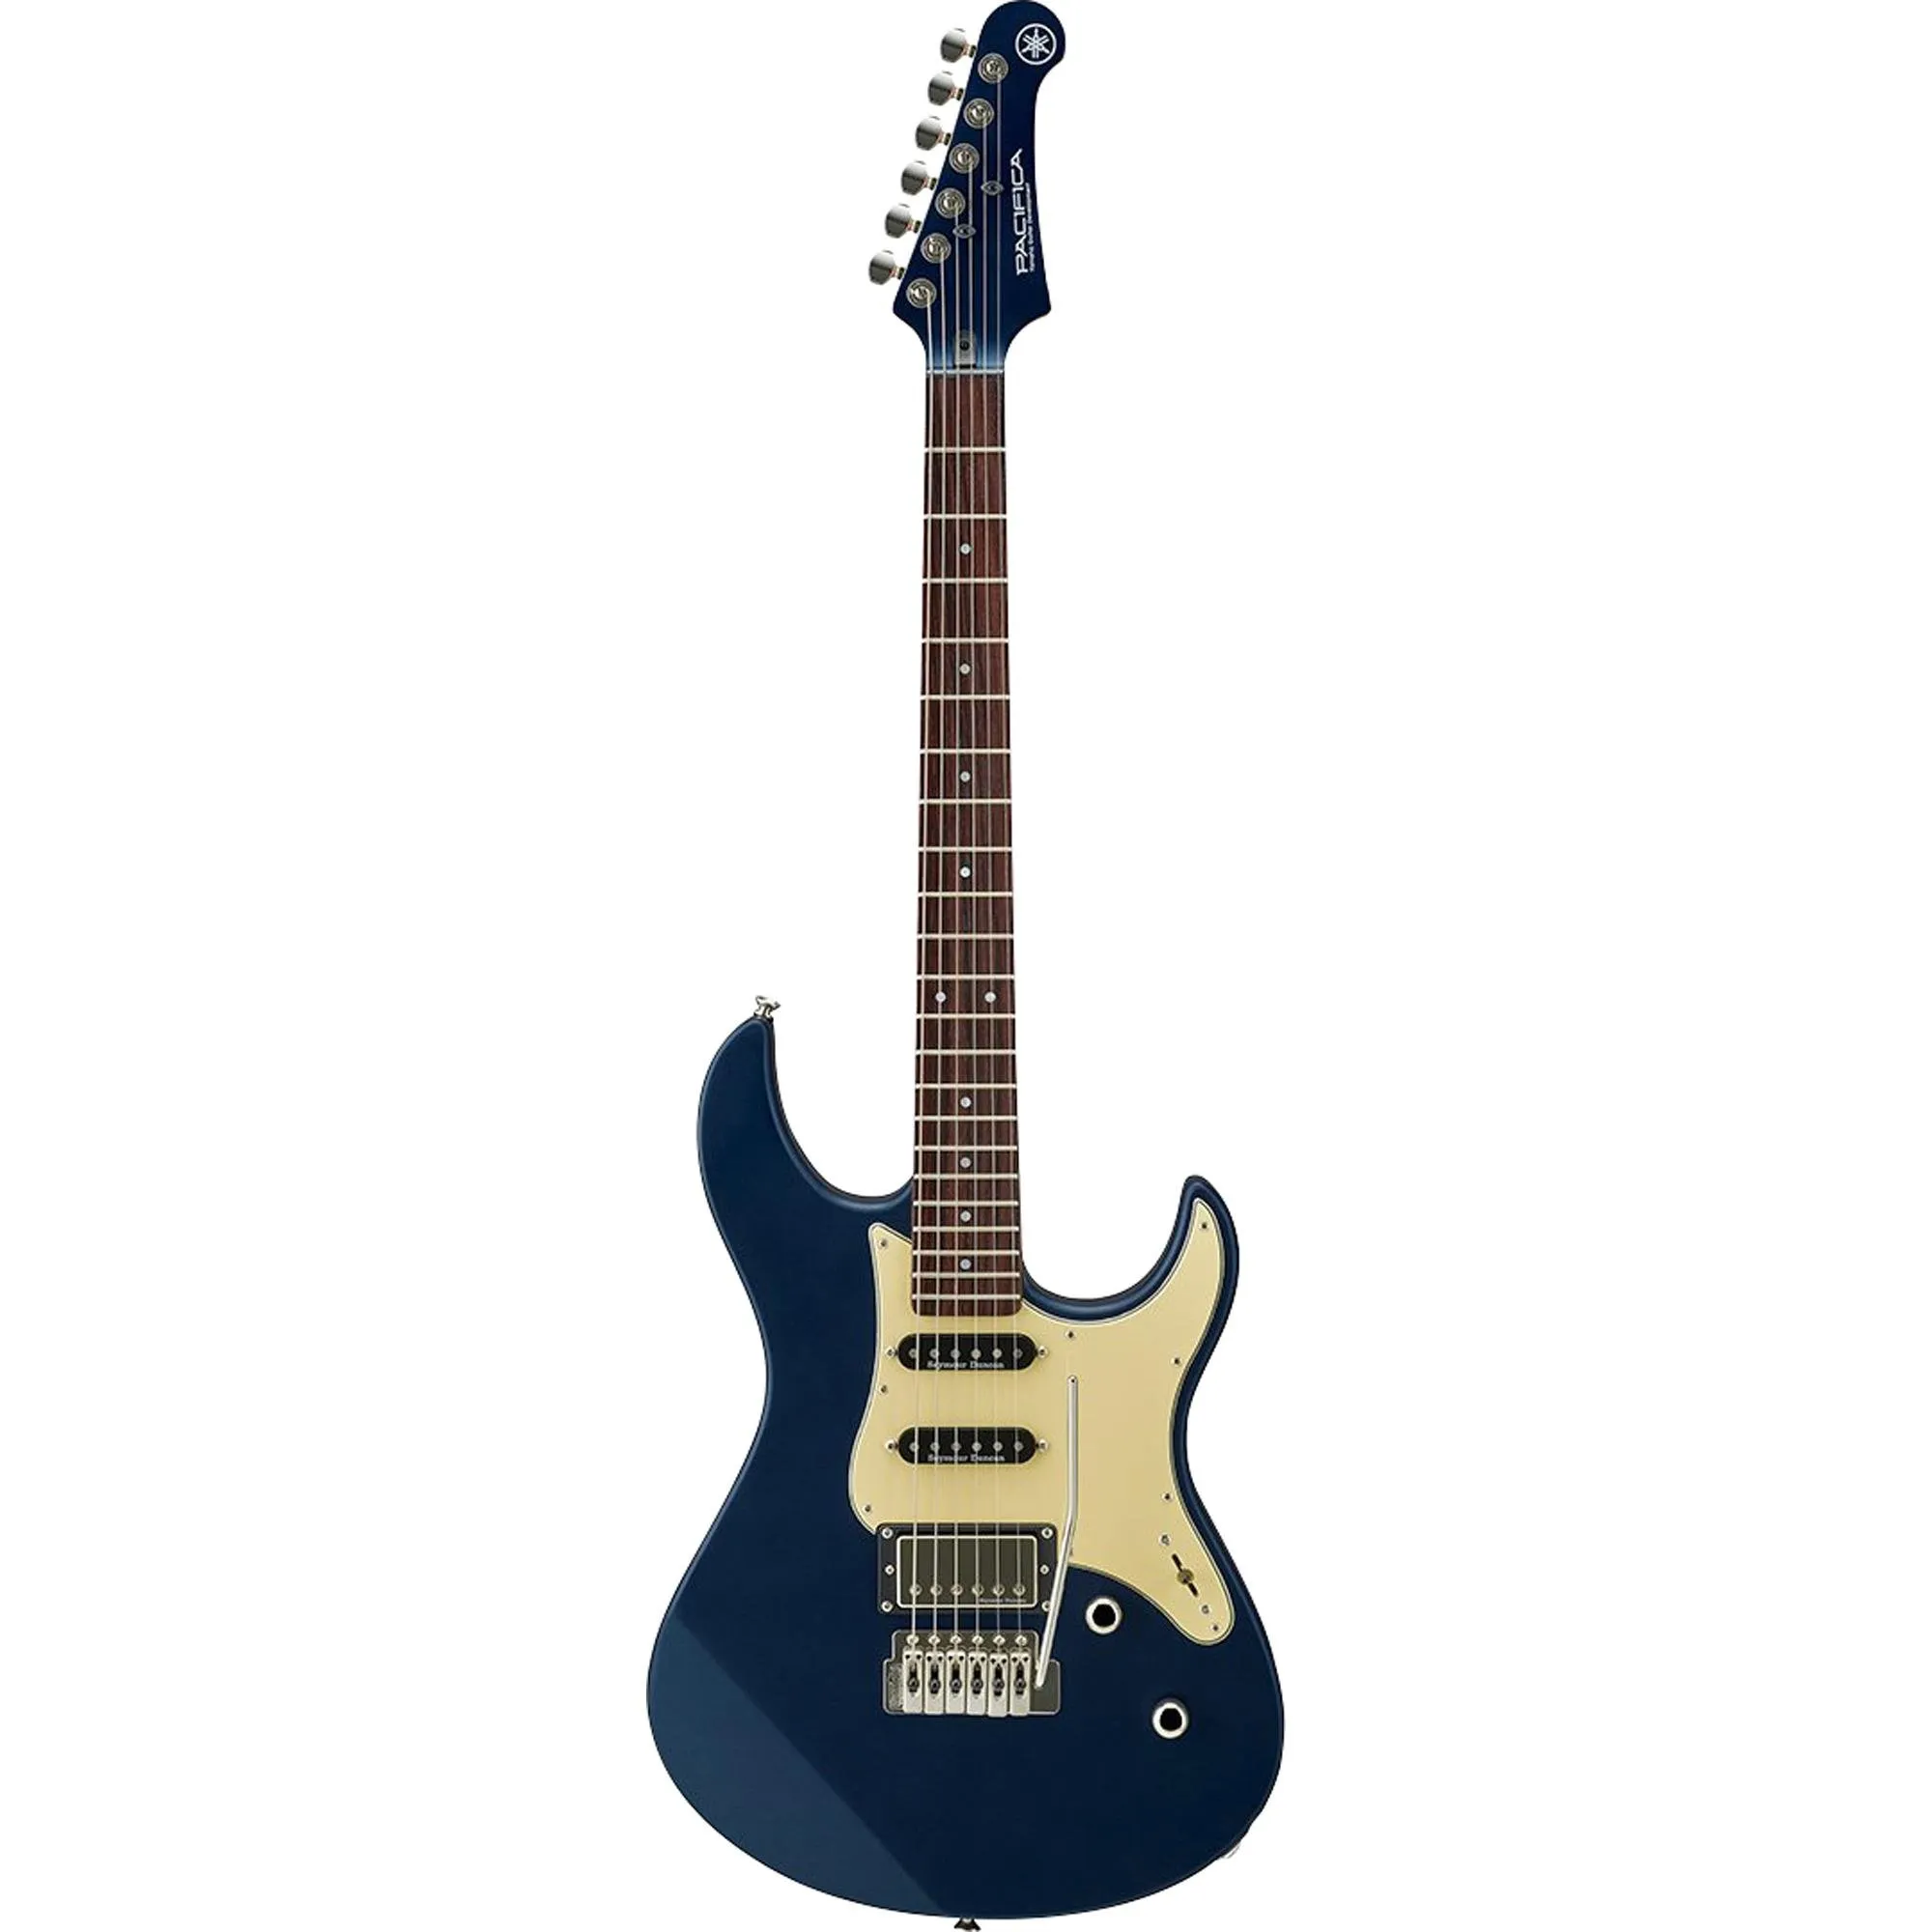 Guitarra Yamaha Pacífica PAC 612 VIIX Matte Silk Blue por 5.804,99 à vista no boleto/pix ou parcele em até 12x sem juros. Compre na loja Mundomax!